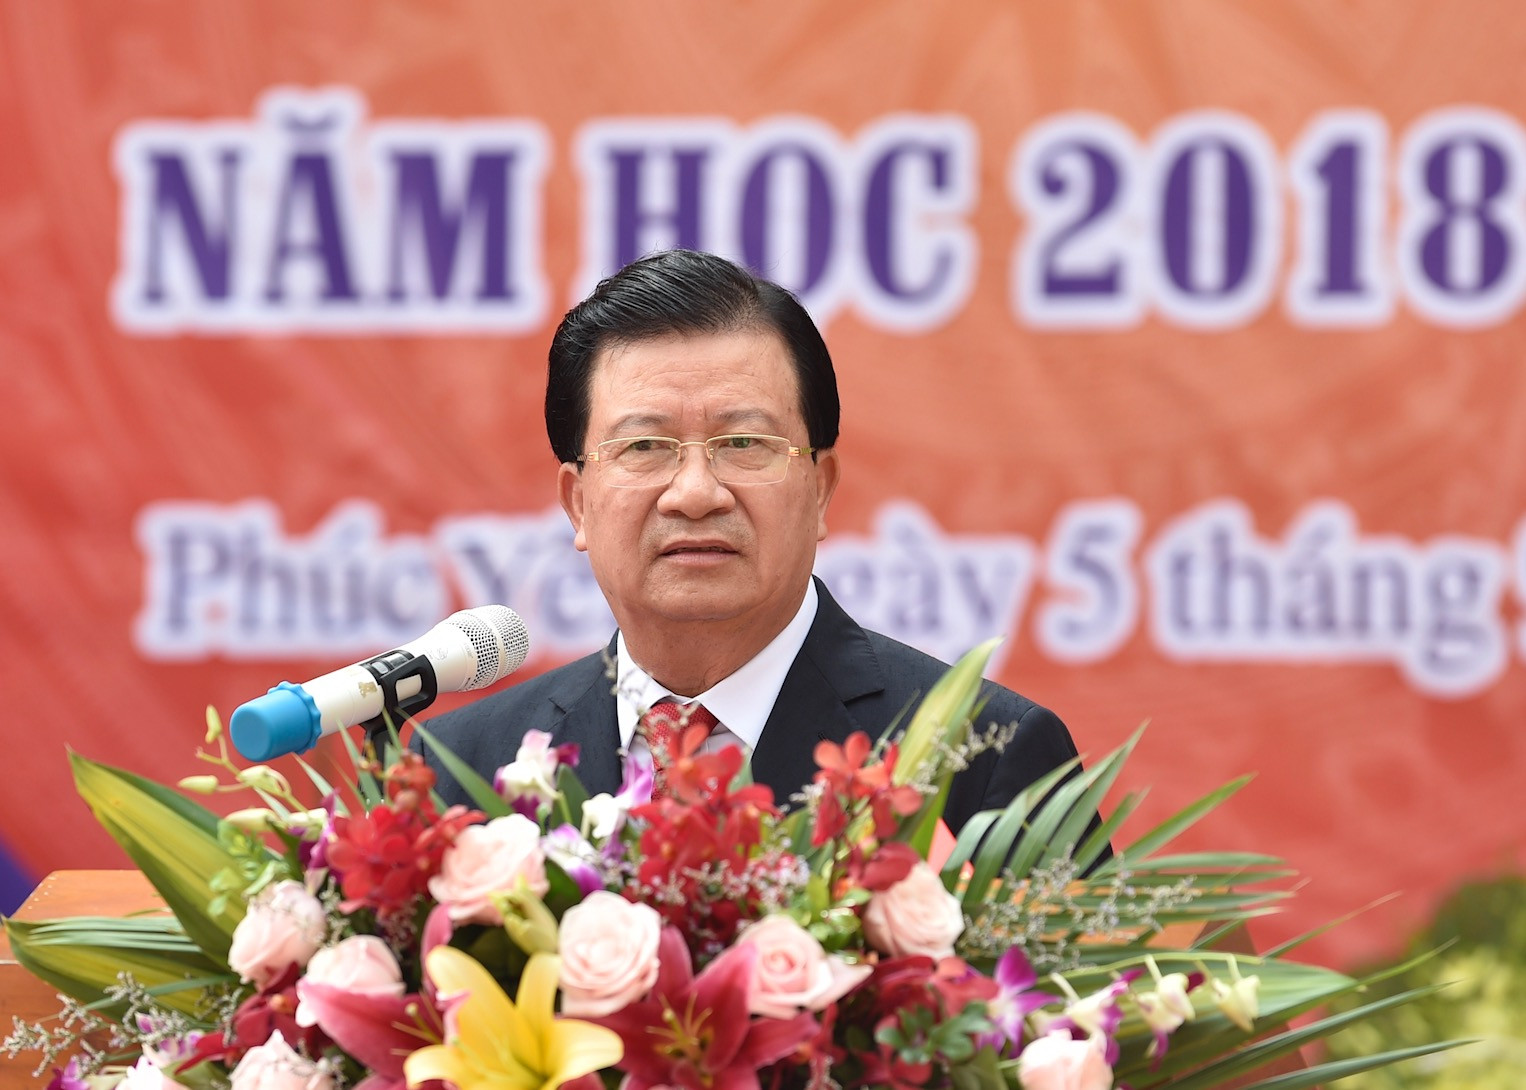 Phó Thủ tướng Trịnh Đình Dũng dự lễ khai giảng tại Vĩnh Phúc